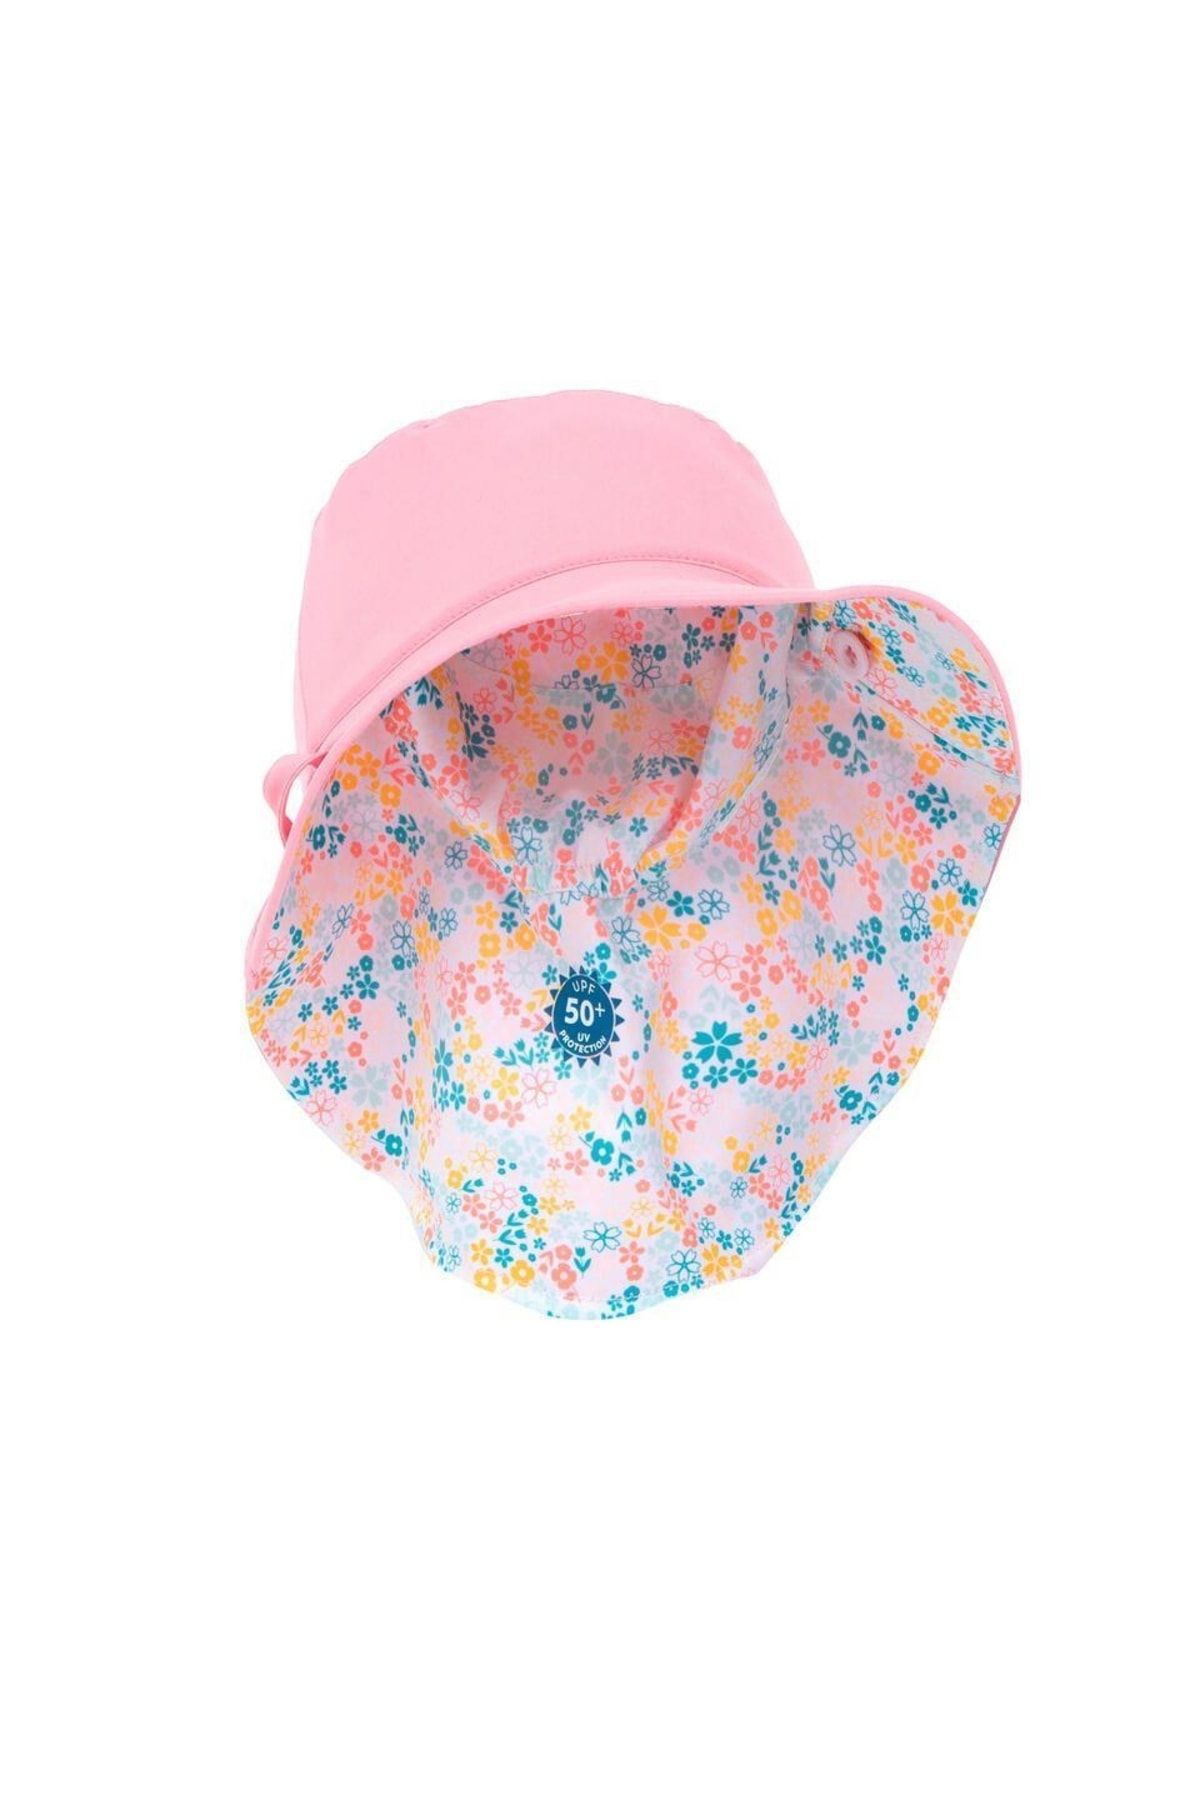 Decathlon Nabaiji Bebek Şapkası Uv Korumalı Xs 49 51 Cm 3 5 Yaş Pembe Çiçek Desenli